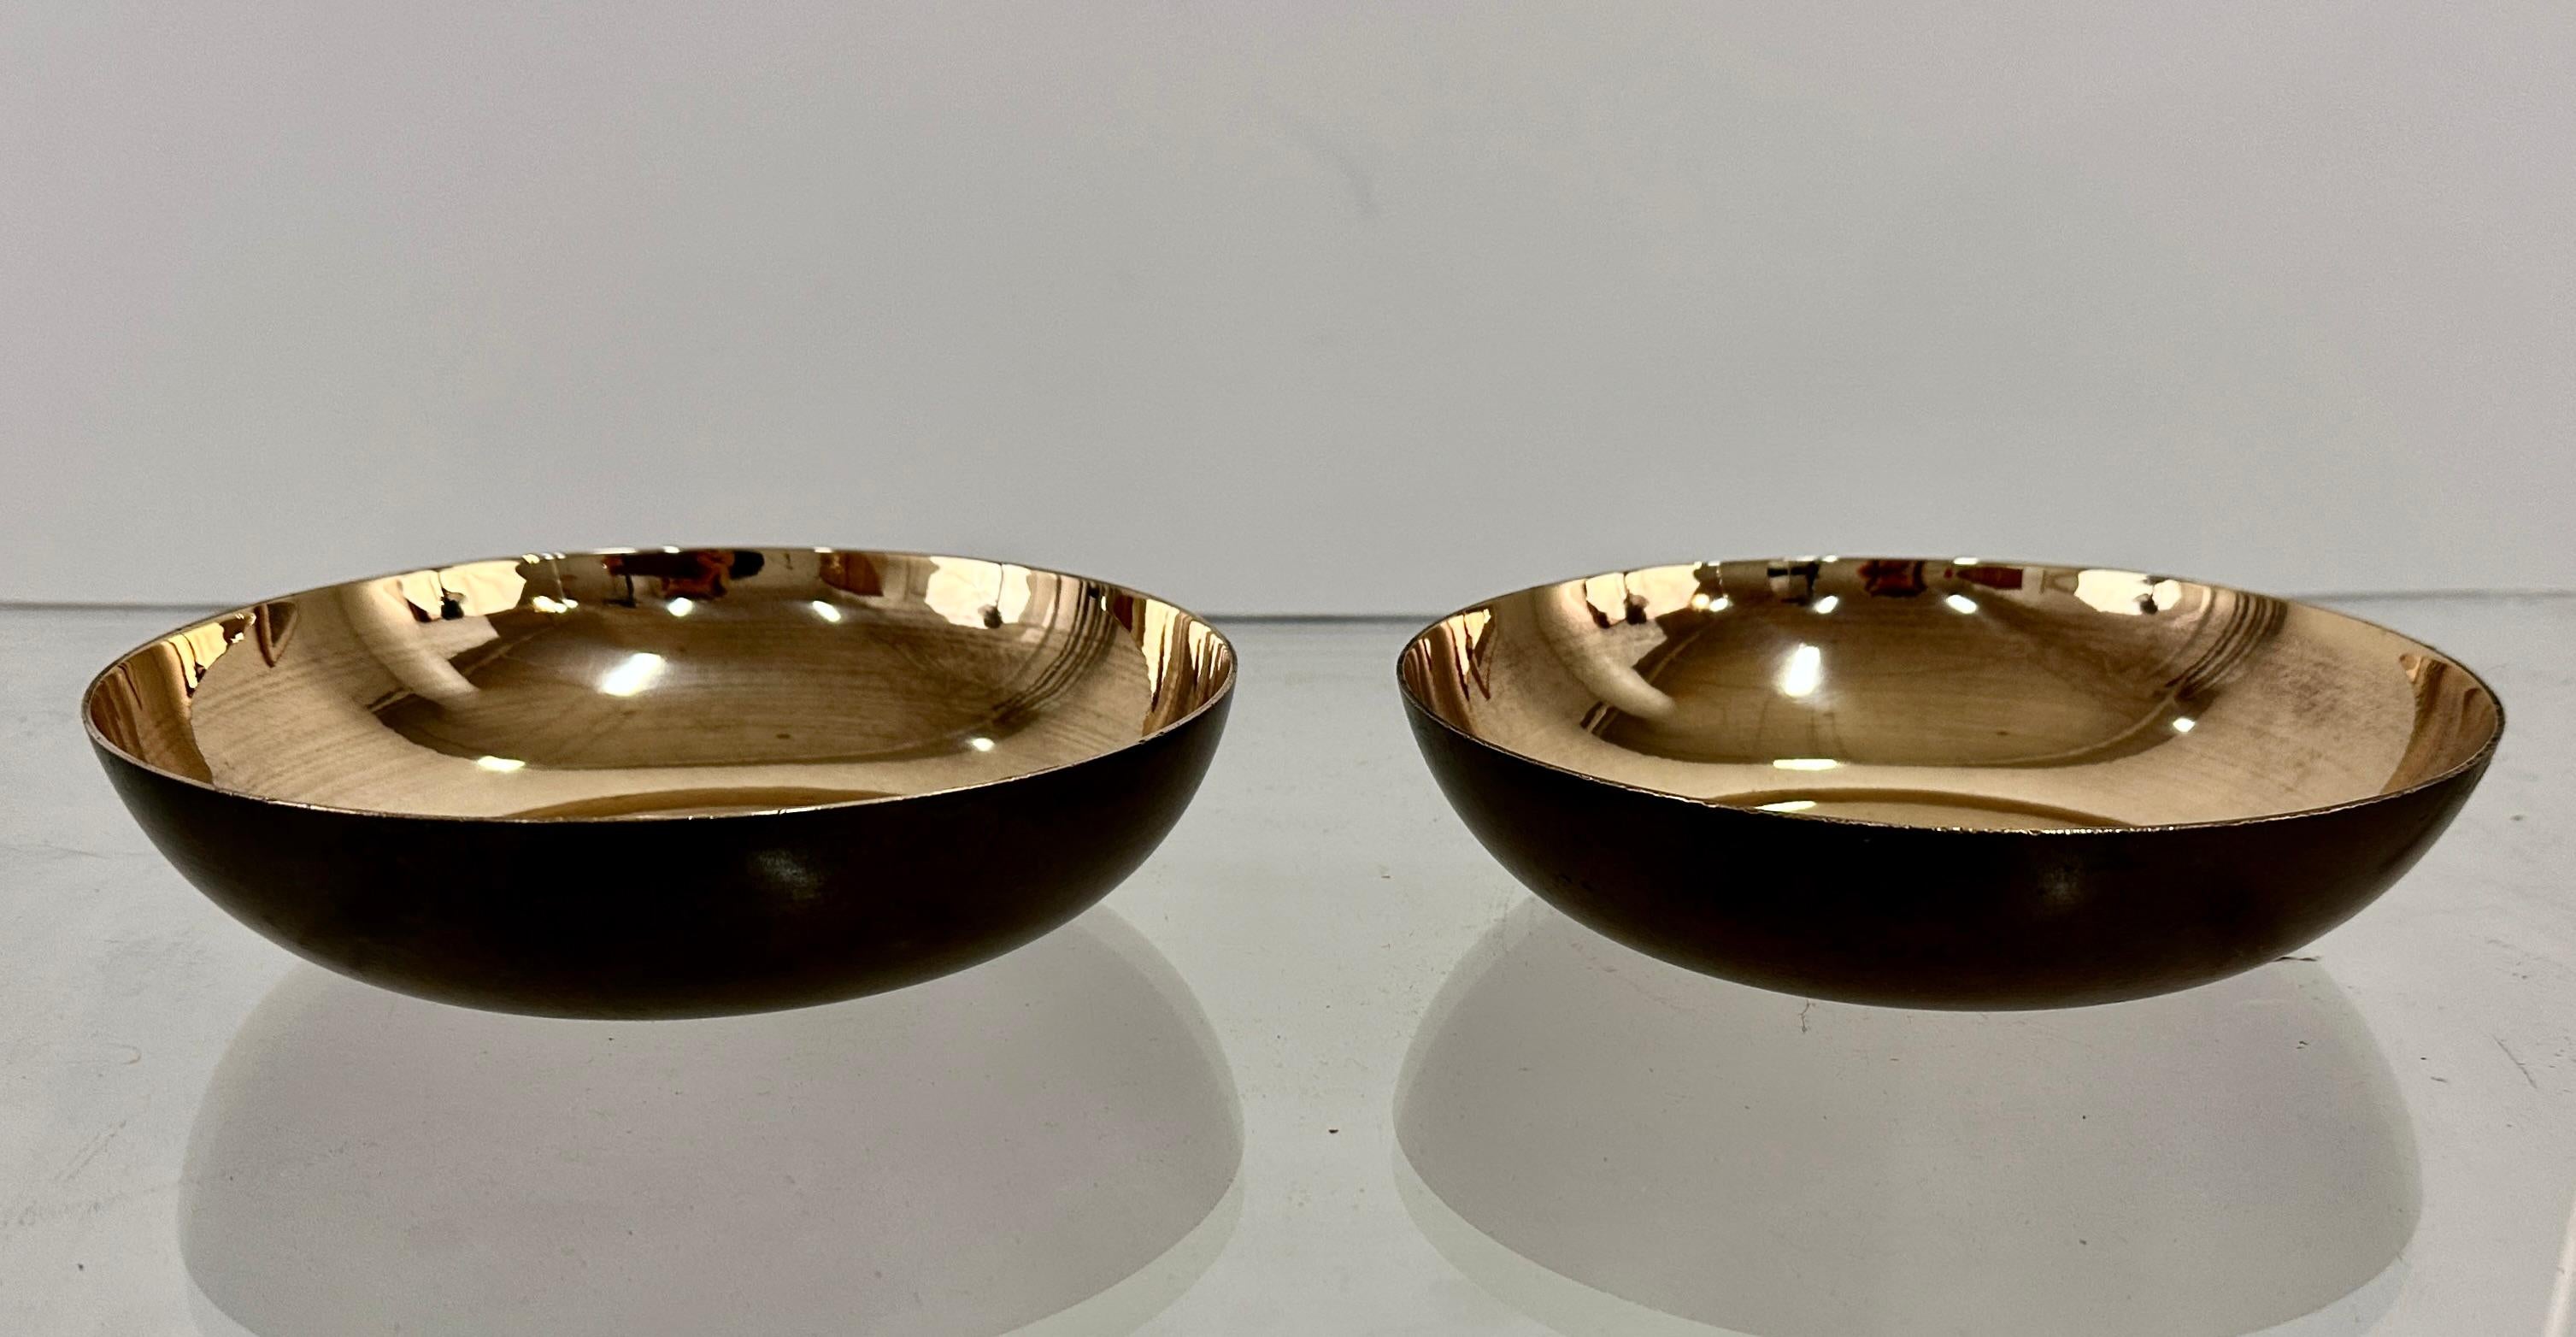 Une paire de bols en bronze patiné avec des intérieurs polis par Carl Sorensen, célèbre métallurgiste de l'Art et de l'Artisanat. Sorensen a réalisé la plupart de ses œuvres à Philadelphie au début du XXe siècle, puis est devenu designer pour les